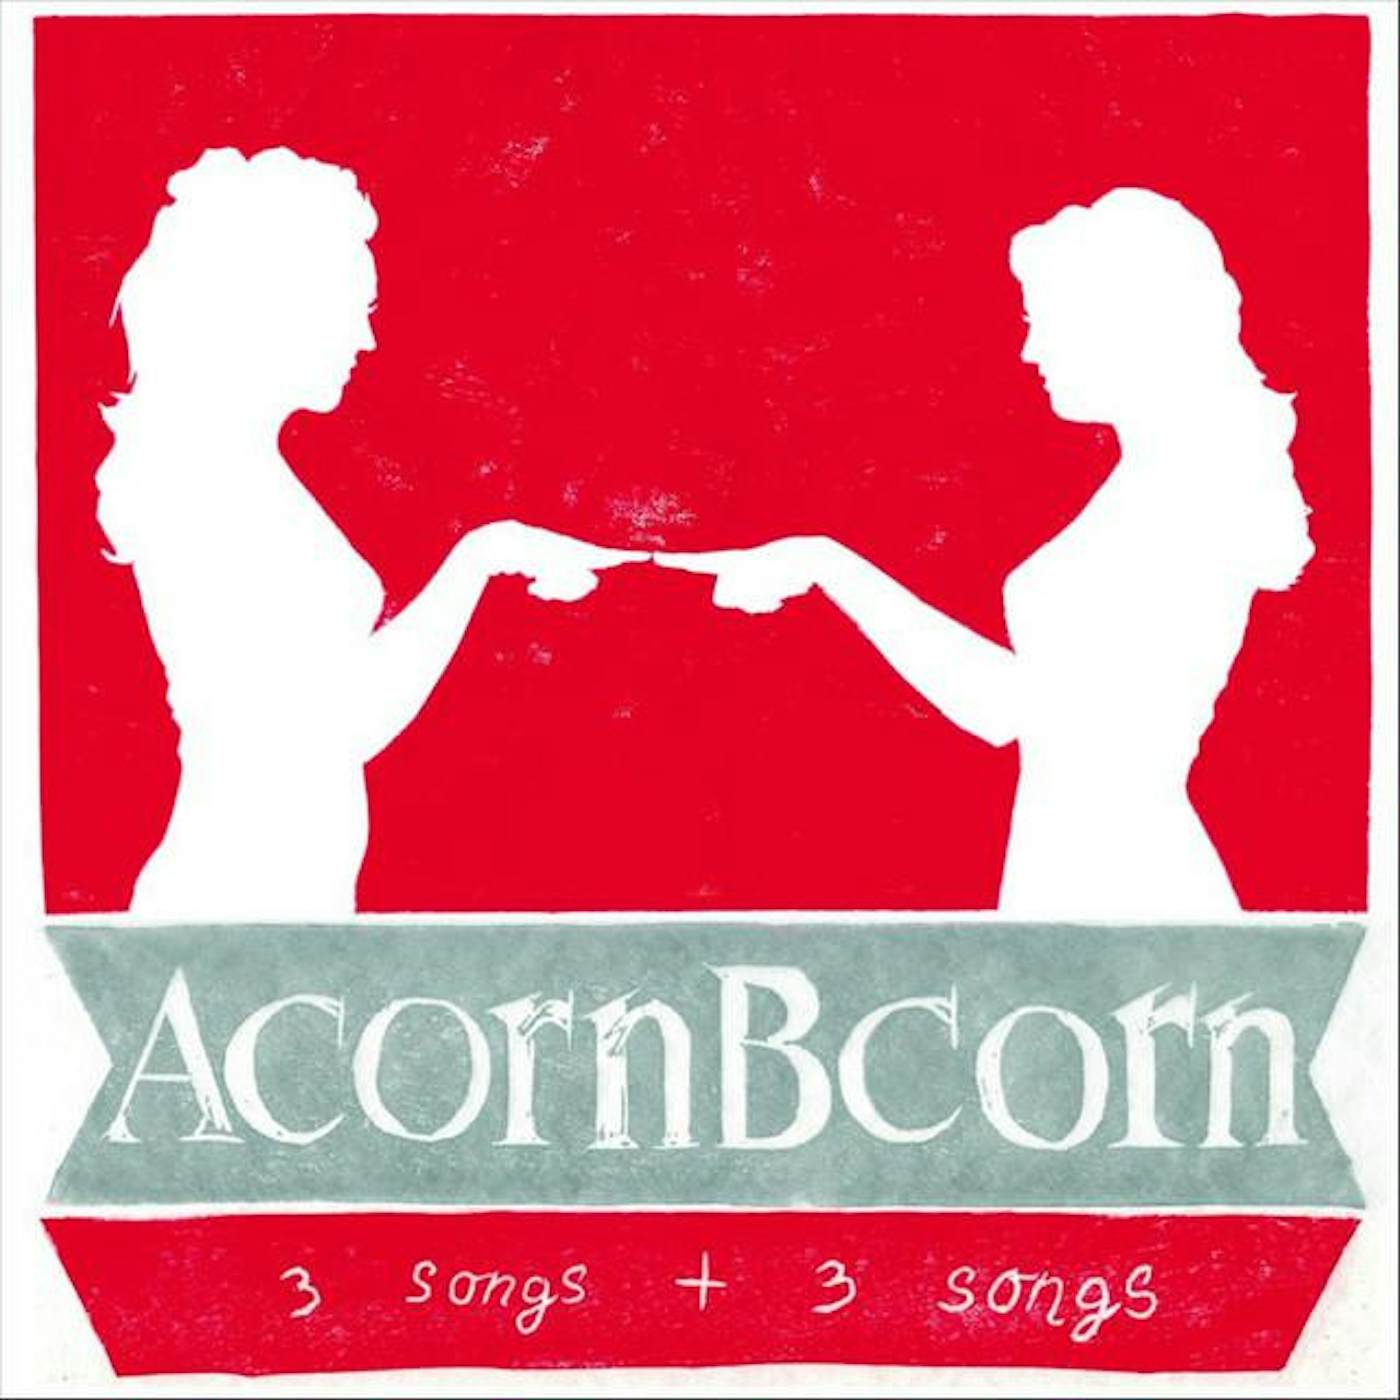 Acorn Bcorn